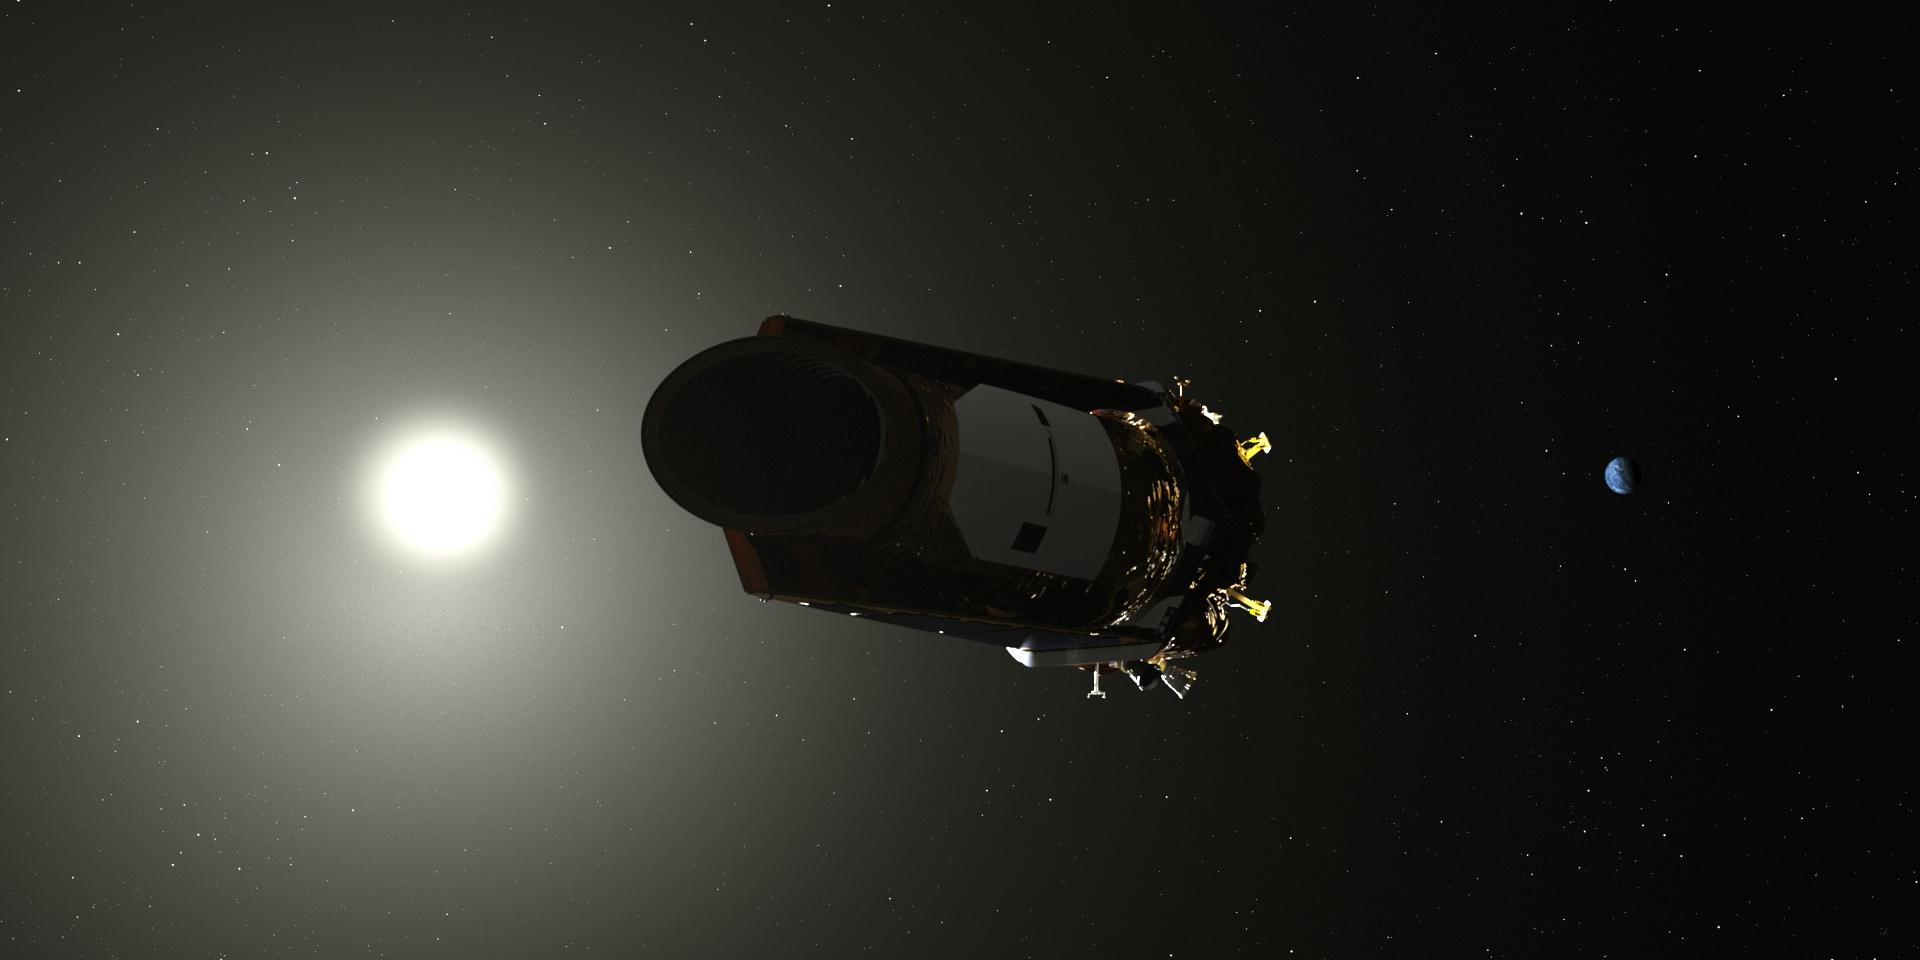 США намерены в 2020 году завершить эксплуатацию орбитального телескопа Spitzer
